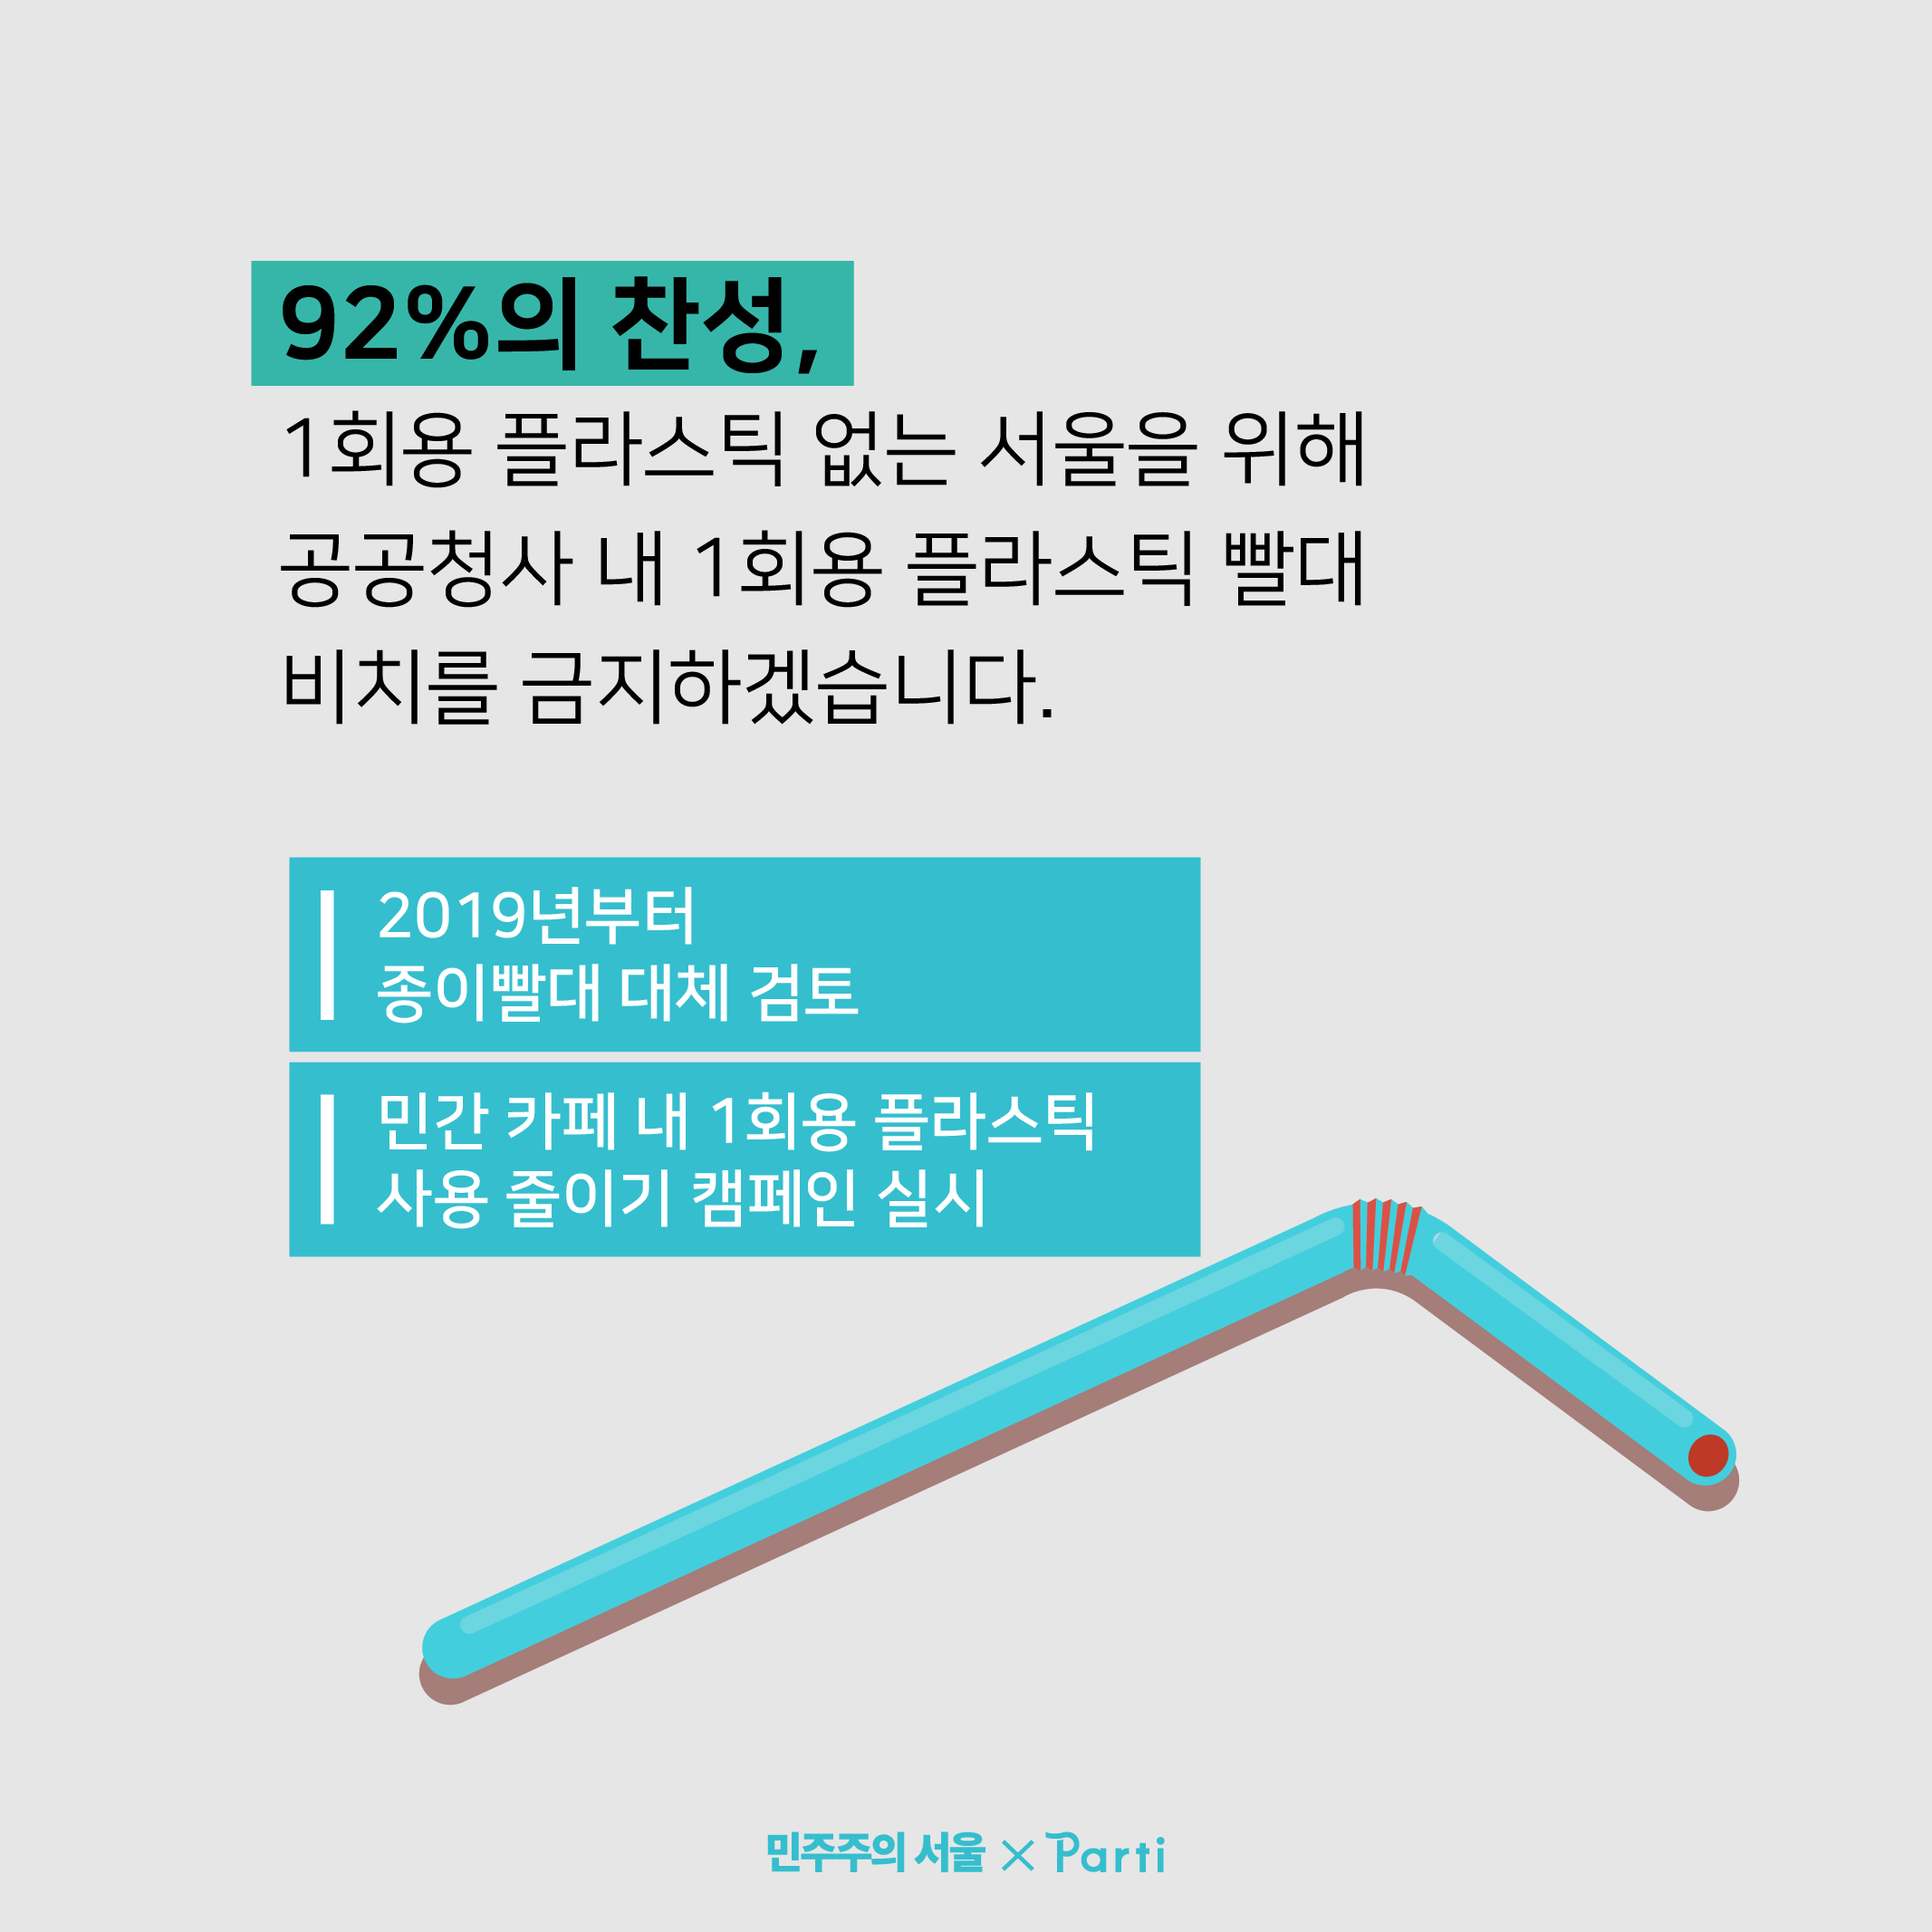 92%의 찬성, 1회용 플라스틱 없는 서울을 위해 공공청사 내 1회용 플라스틱 빨대 비치를 금지하겠습니다. 2018년부터 종이 빨대 대체를 검토중이며, 민간 카페 내 1회용 플라스틱 사용 줄이기 캠페인도 실시할 예정입니다.